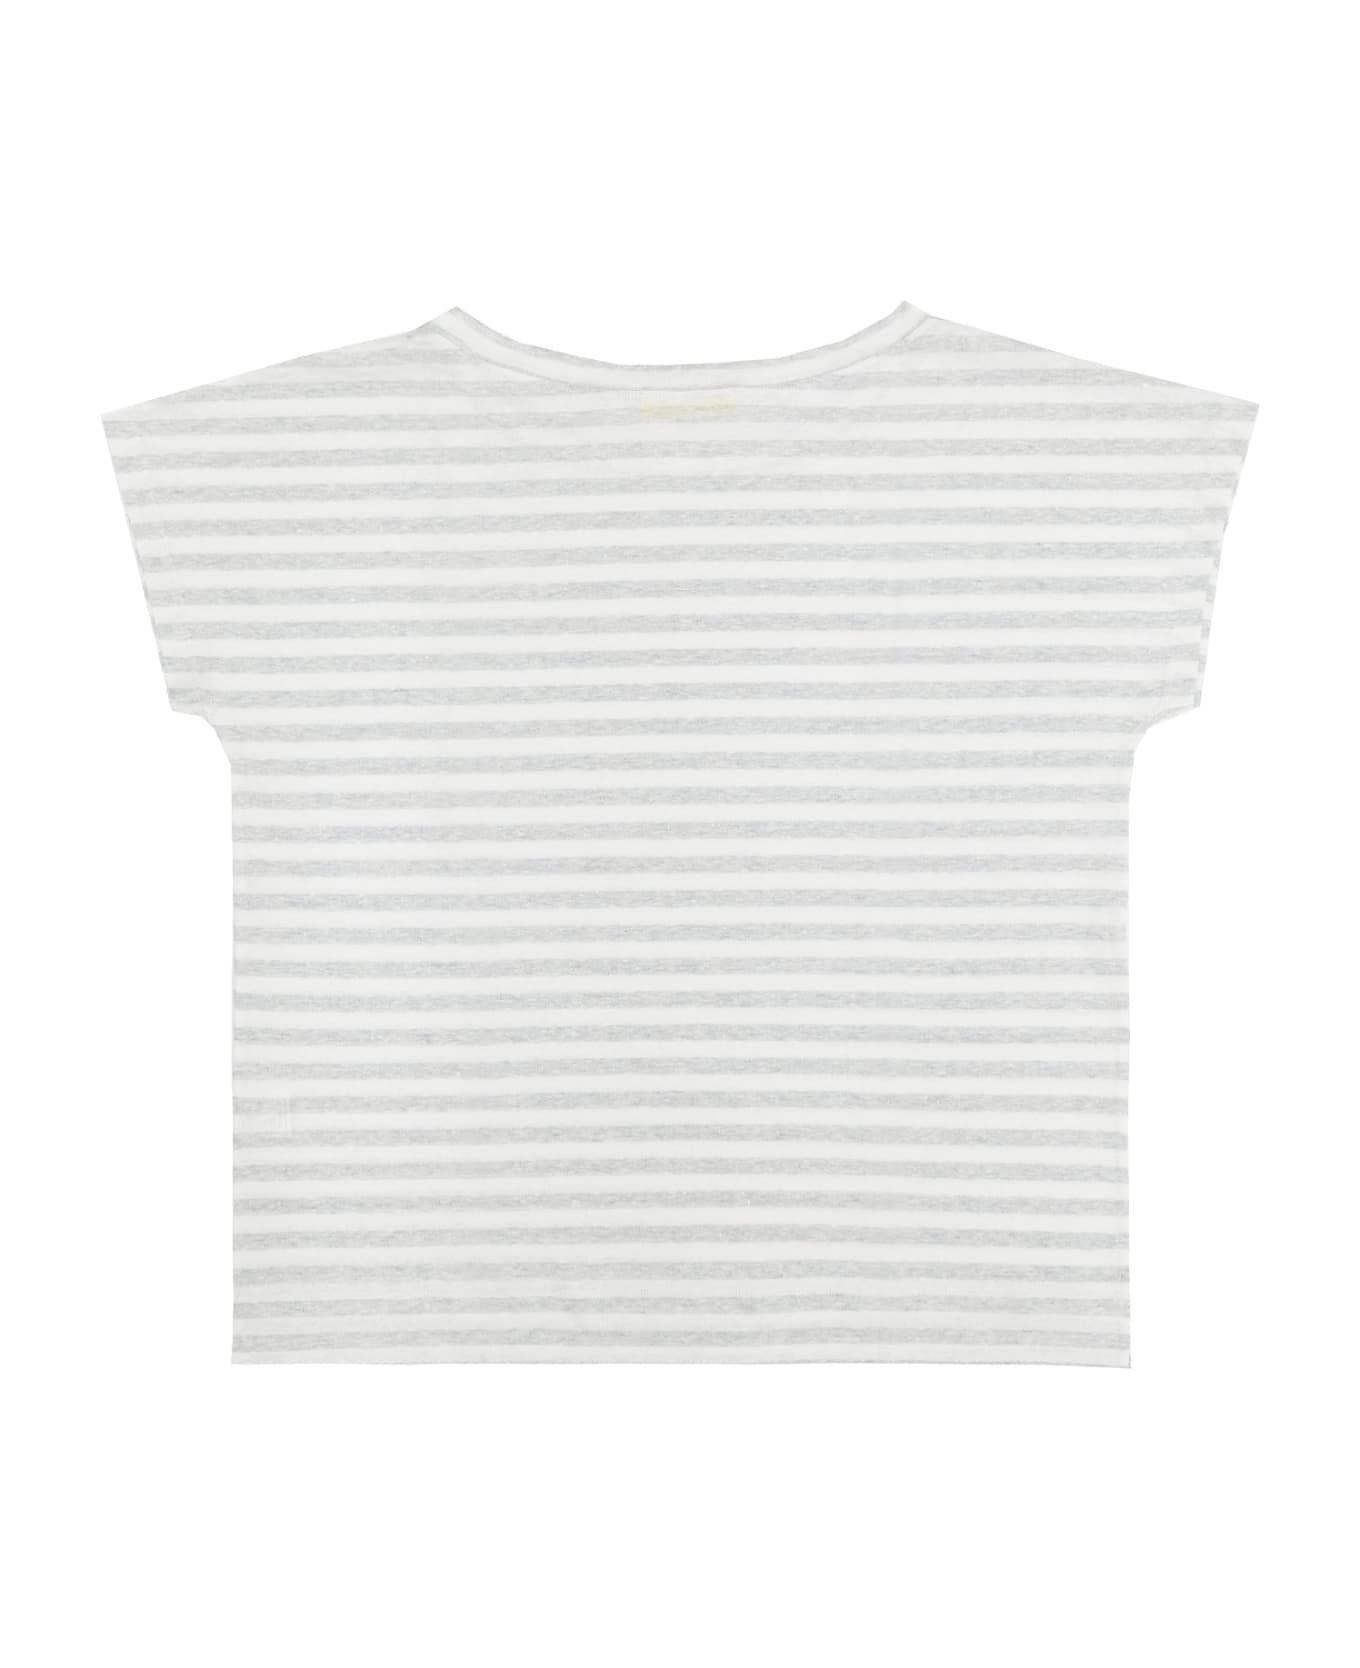 Drumohr T-shirt - White